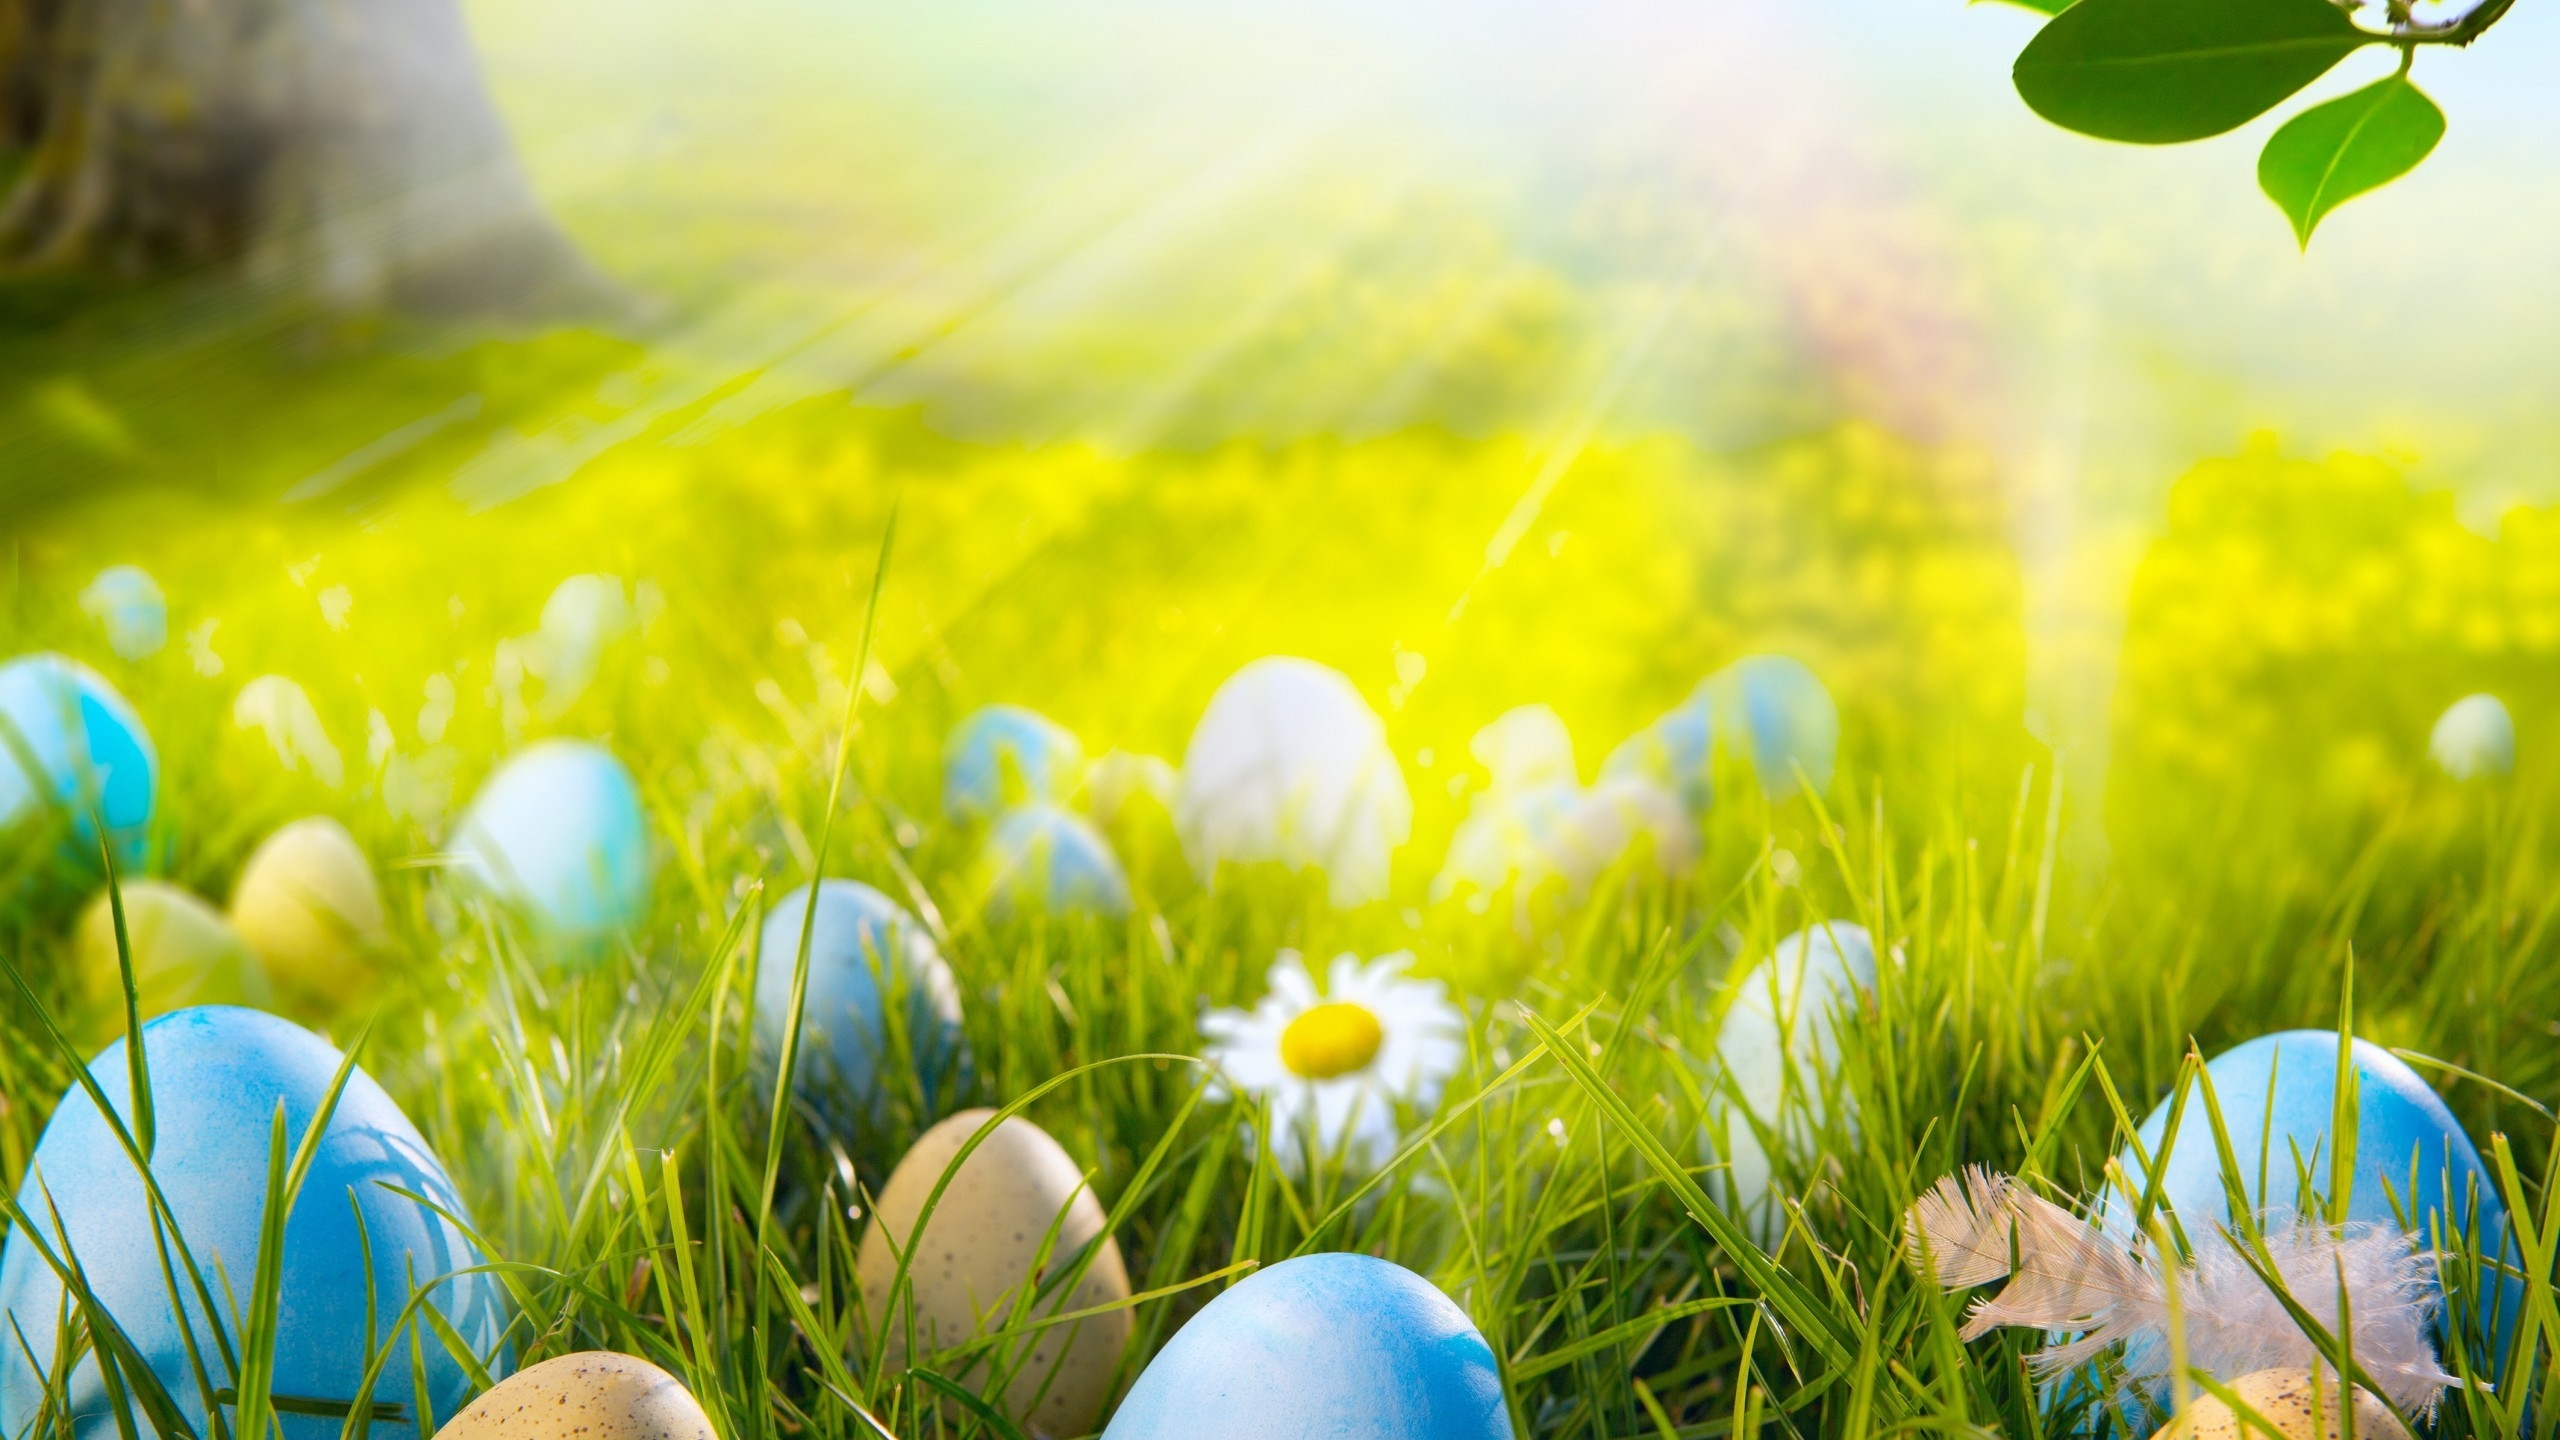 Easter Eggs Field for 2560x1440 HDTV resolution